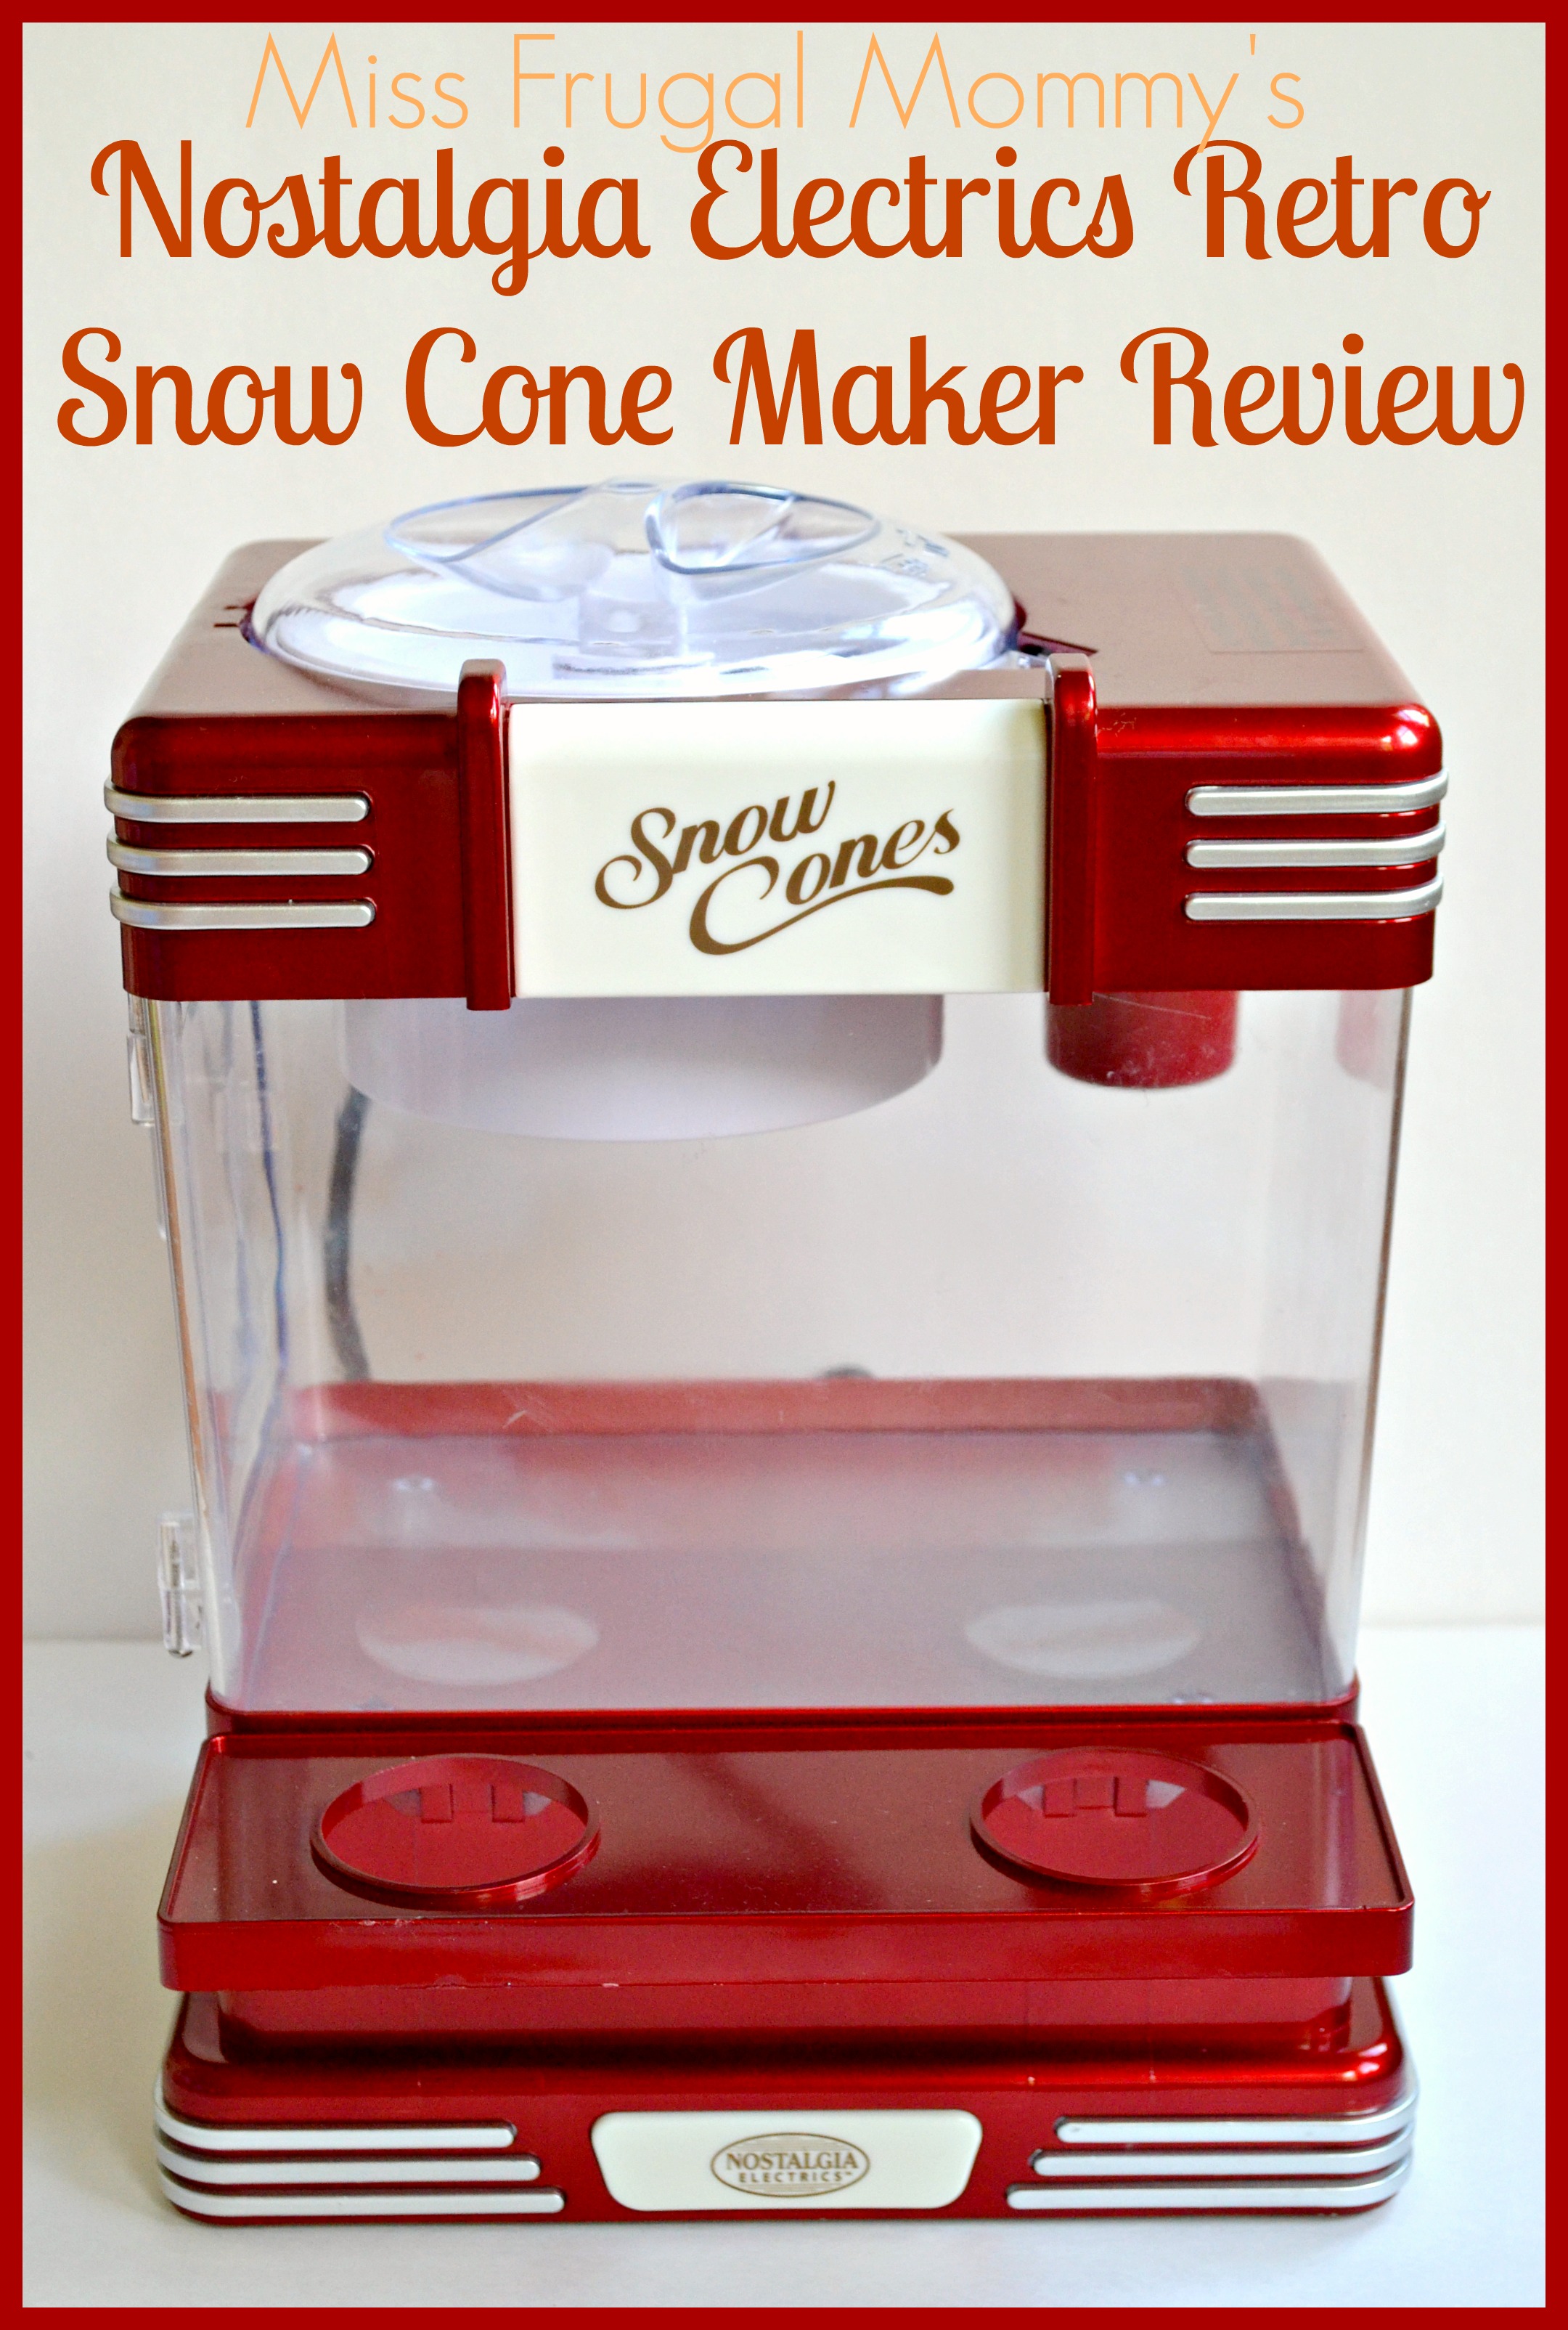 Nostalgia Electrics Retro Snow Cone Maker Review